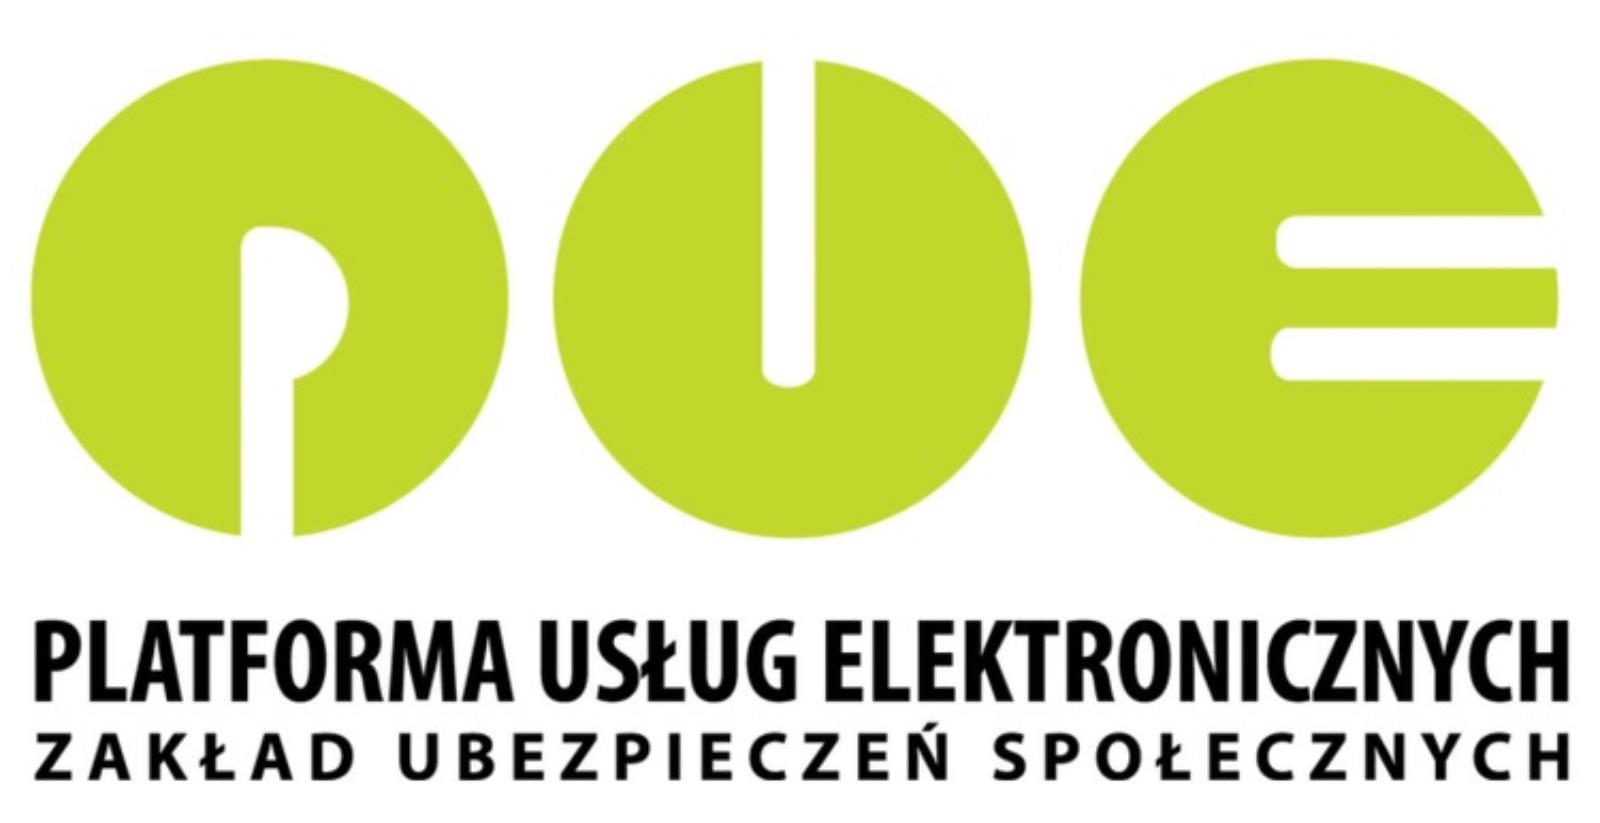 Sobota w krakowskim Oddziale ZUS - Platforma Usług Elektronicznych ZUS (PUE) dla płatników, którzy nie założyli profilu PUE